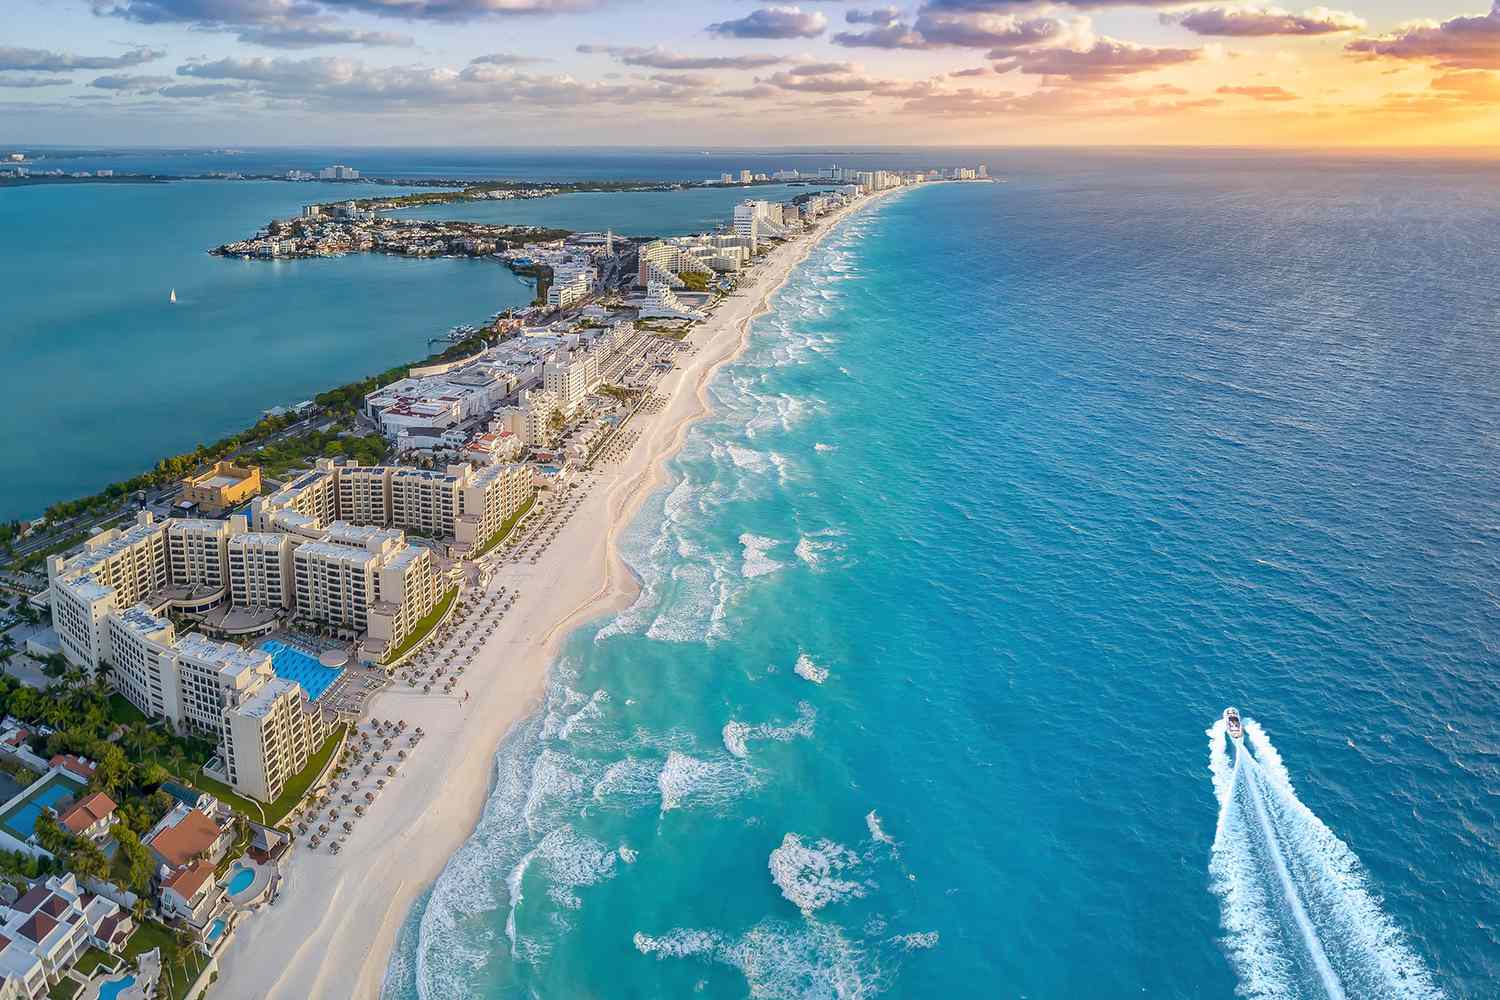 Vue aérienne de la plage de Cancun avec bateau